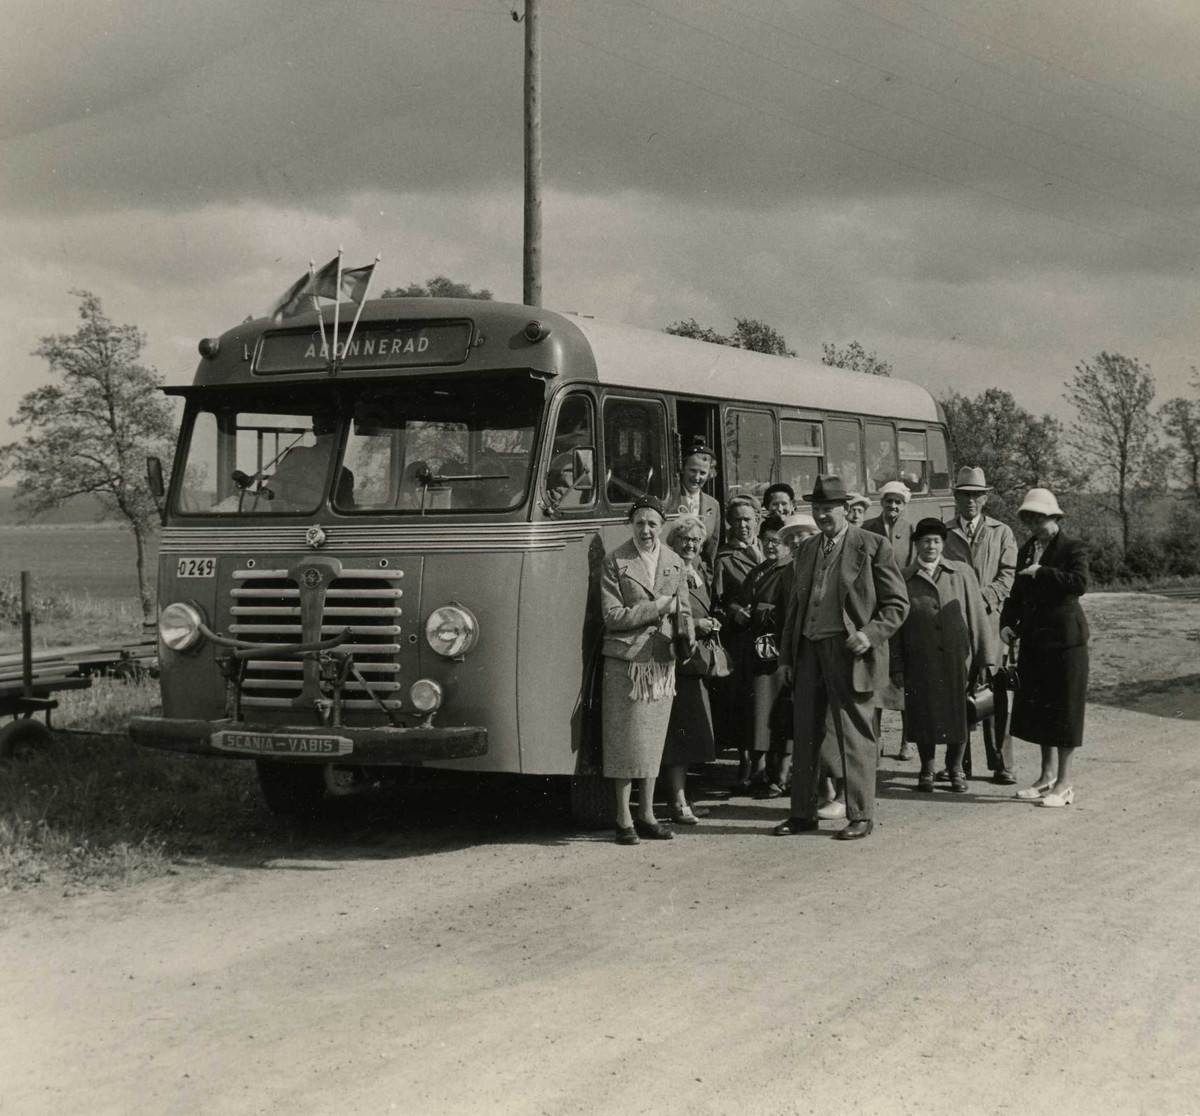 "De gamlas utfärd", Kållered RK, 1950-tal. En abonnerad buss med tre vimplar står parkerad utefter en landsväg. Bredvid står några personer som ska åka med på en rundtur. På fotot ses bland annat Rut Bengtsson (Långåker), Olga Holmen (Vommedal), Ottilia Pettersson (Livered) samt Ester Nyberg (Lugnet).